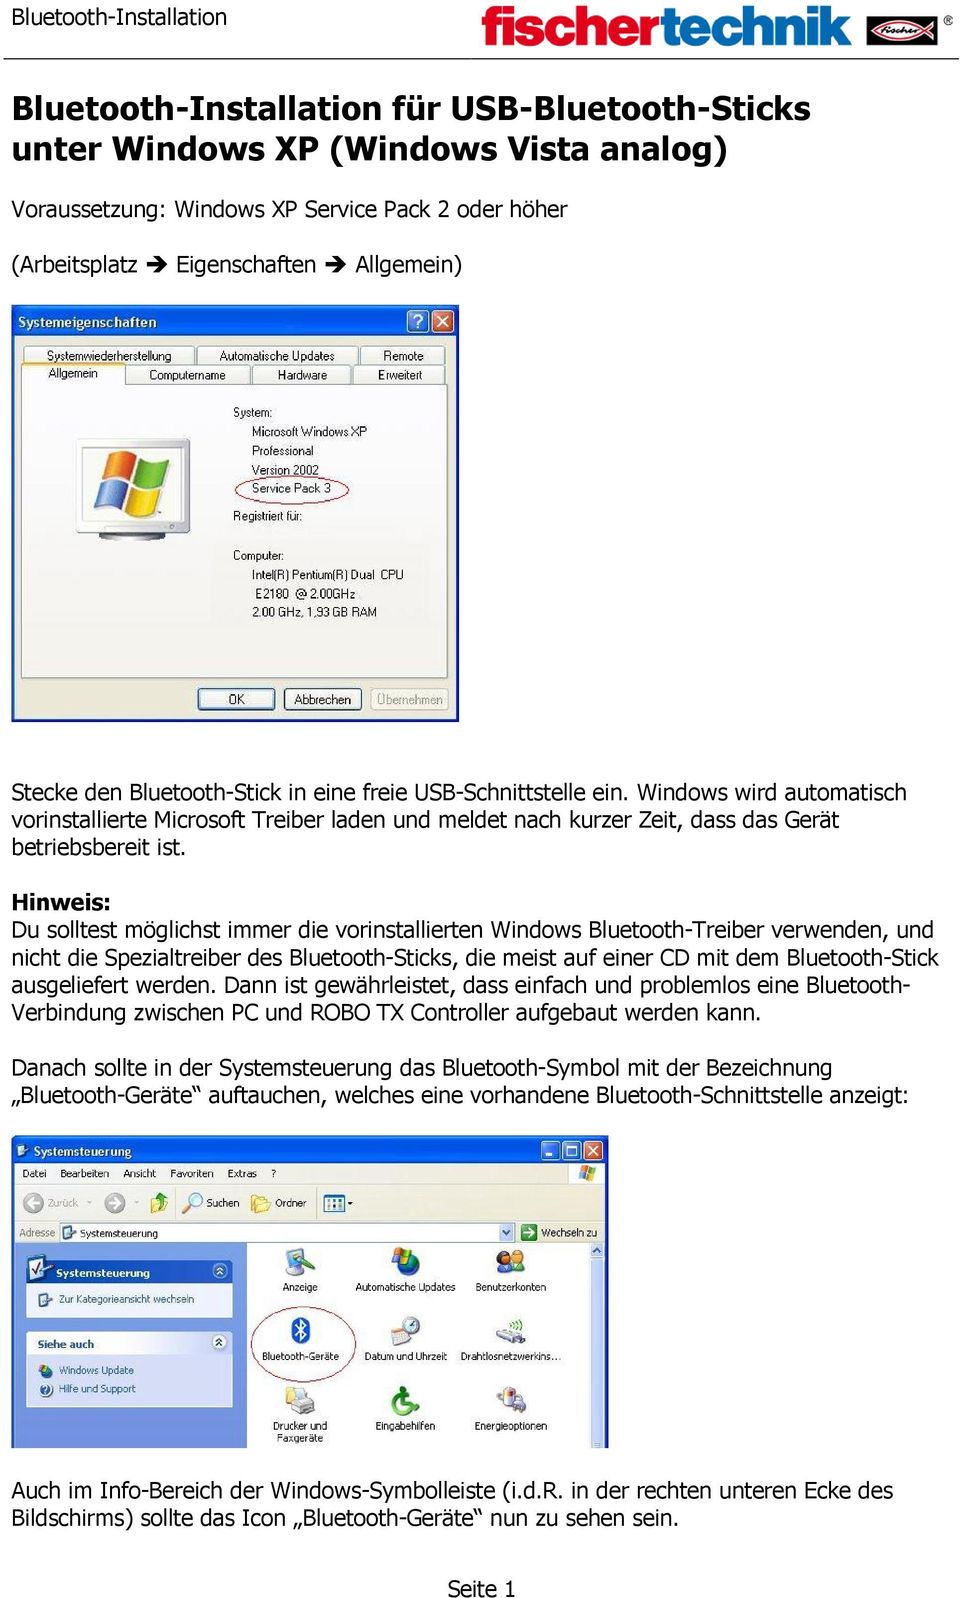 manual de bluetooth activesync para la tienda de servicios 3 de windows xp